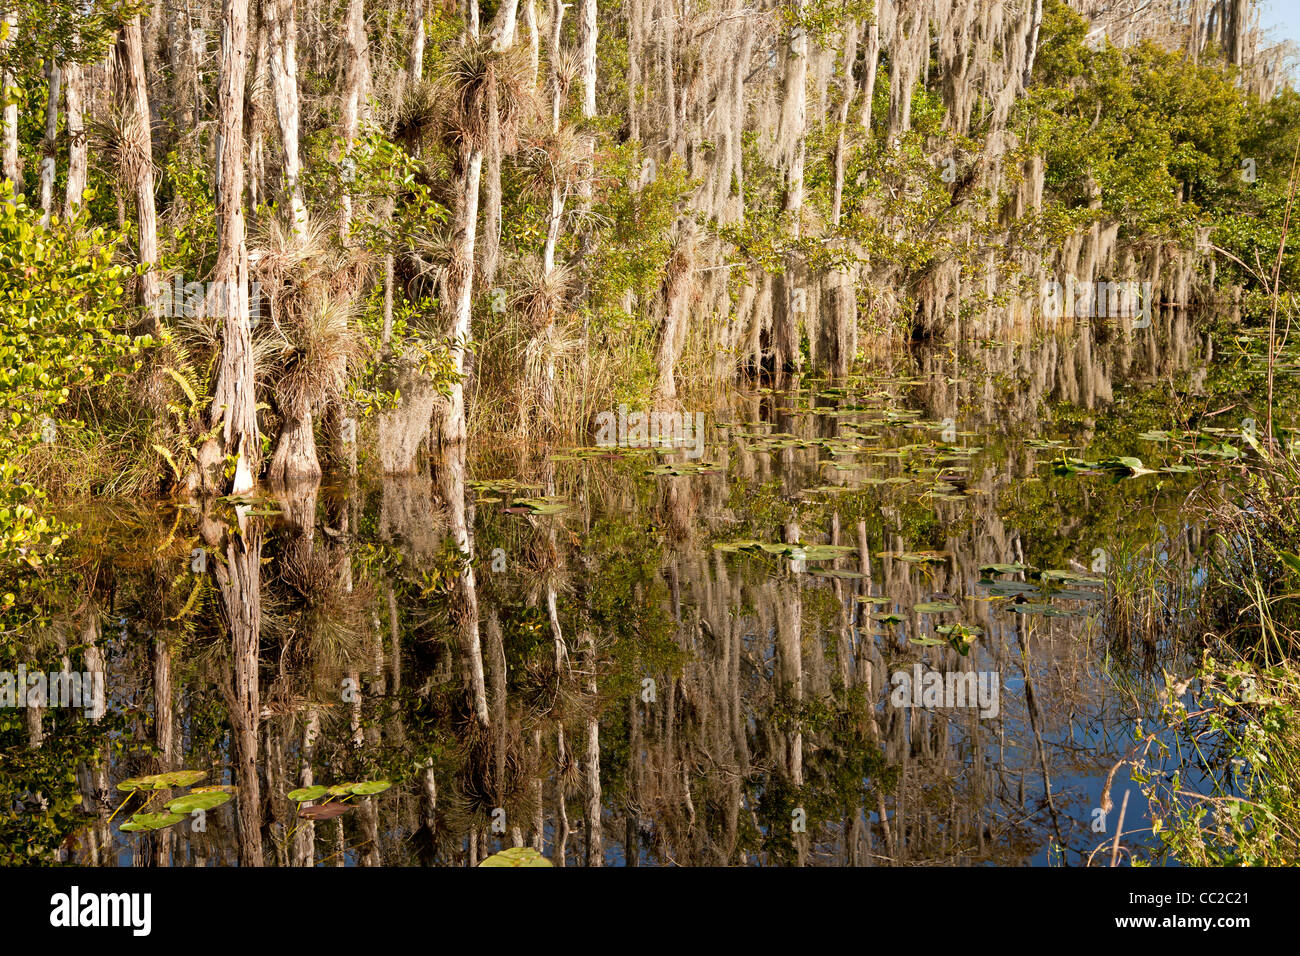 La végétation dense, la mousse espagnole dans le marais entre Big Cypress National Preserve et le Parc National des Everglades en Floride, USA Banque D'Images